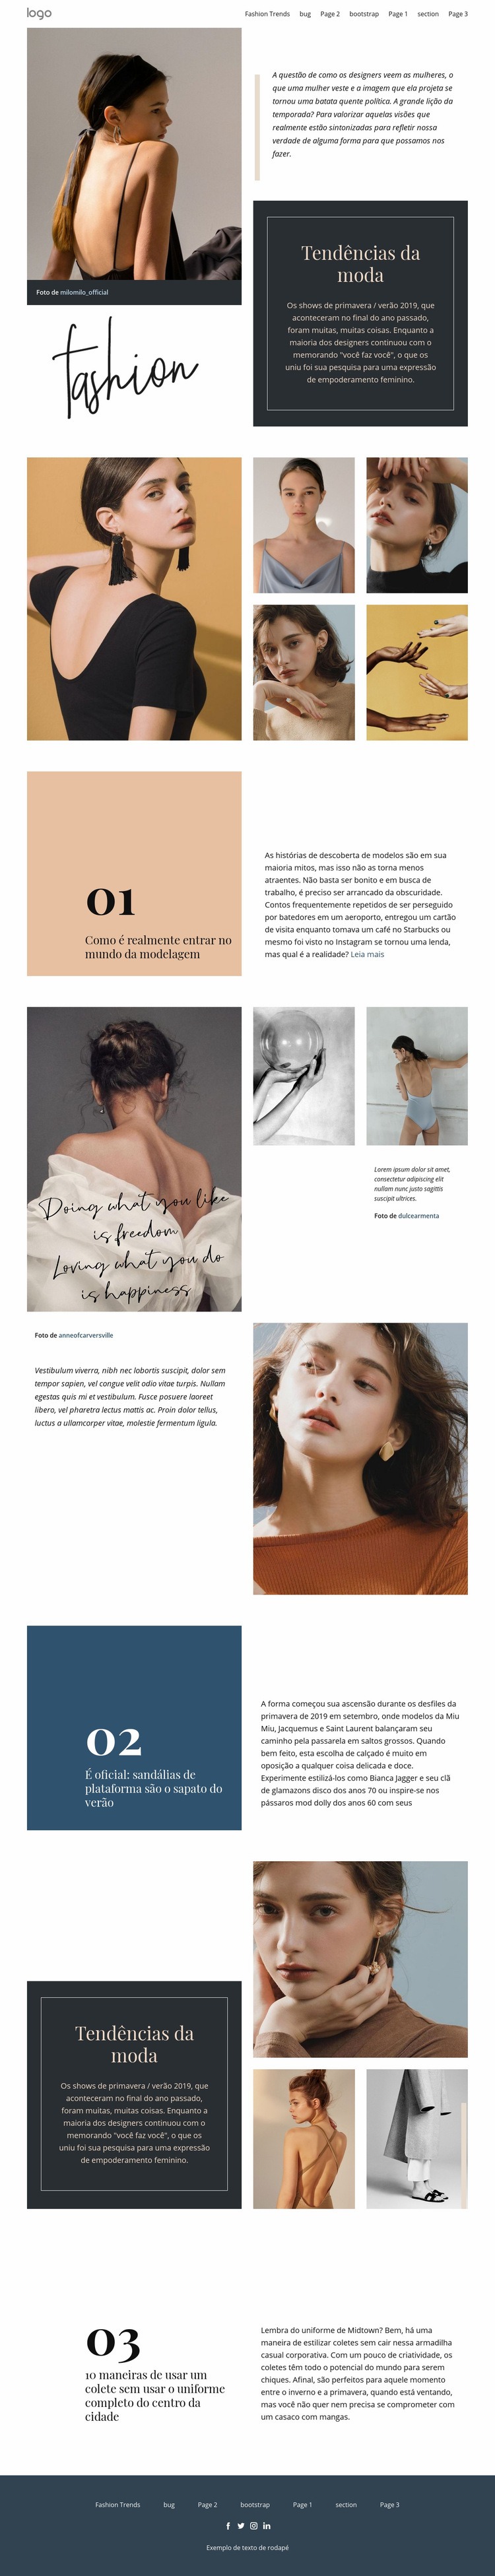 Visão do designer de moda Design do site